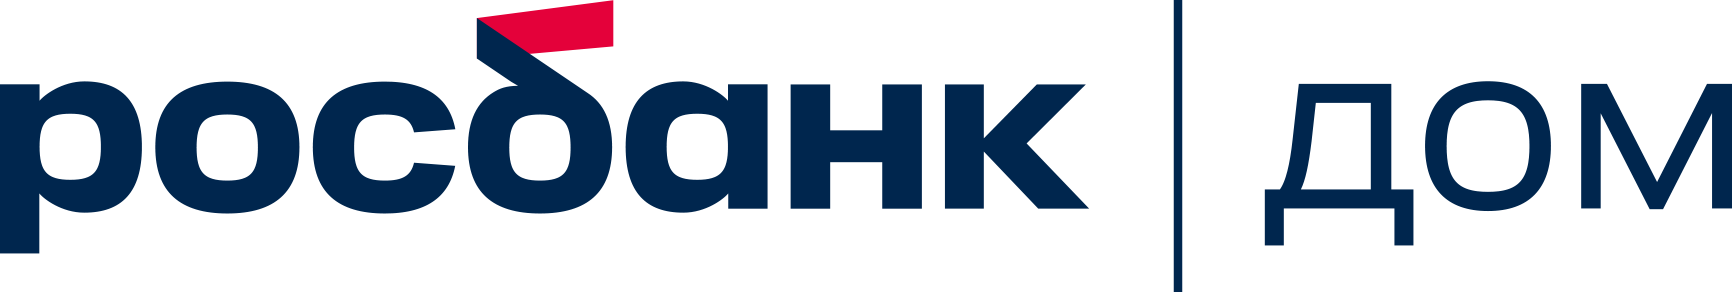 Логотип Росбанк